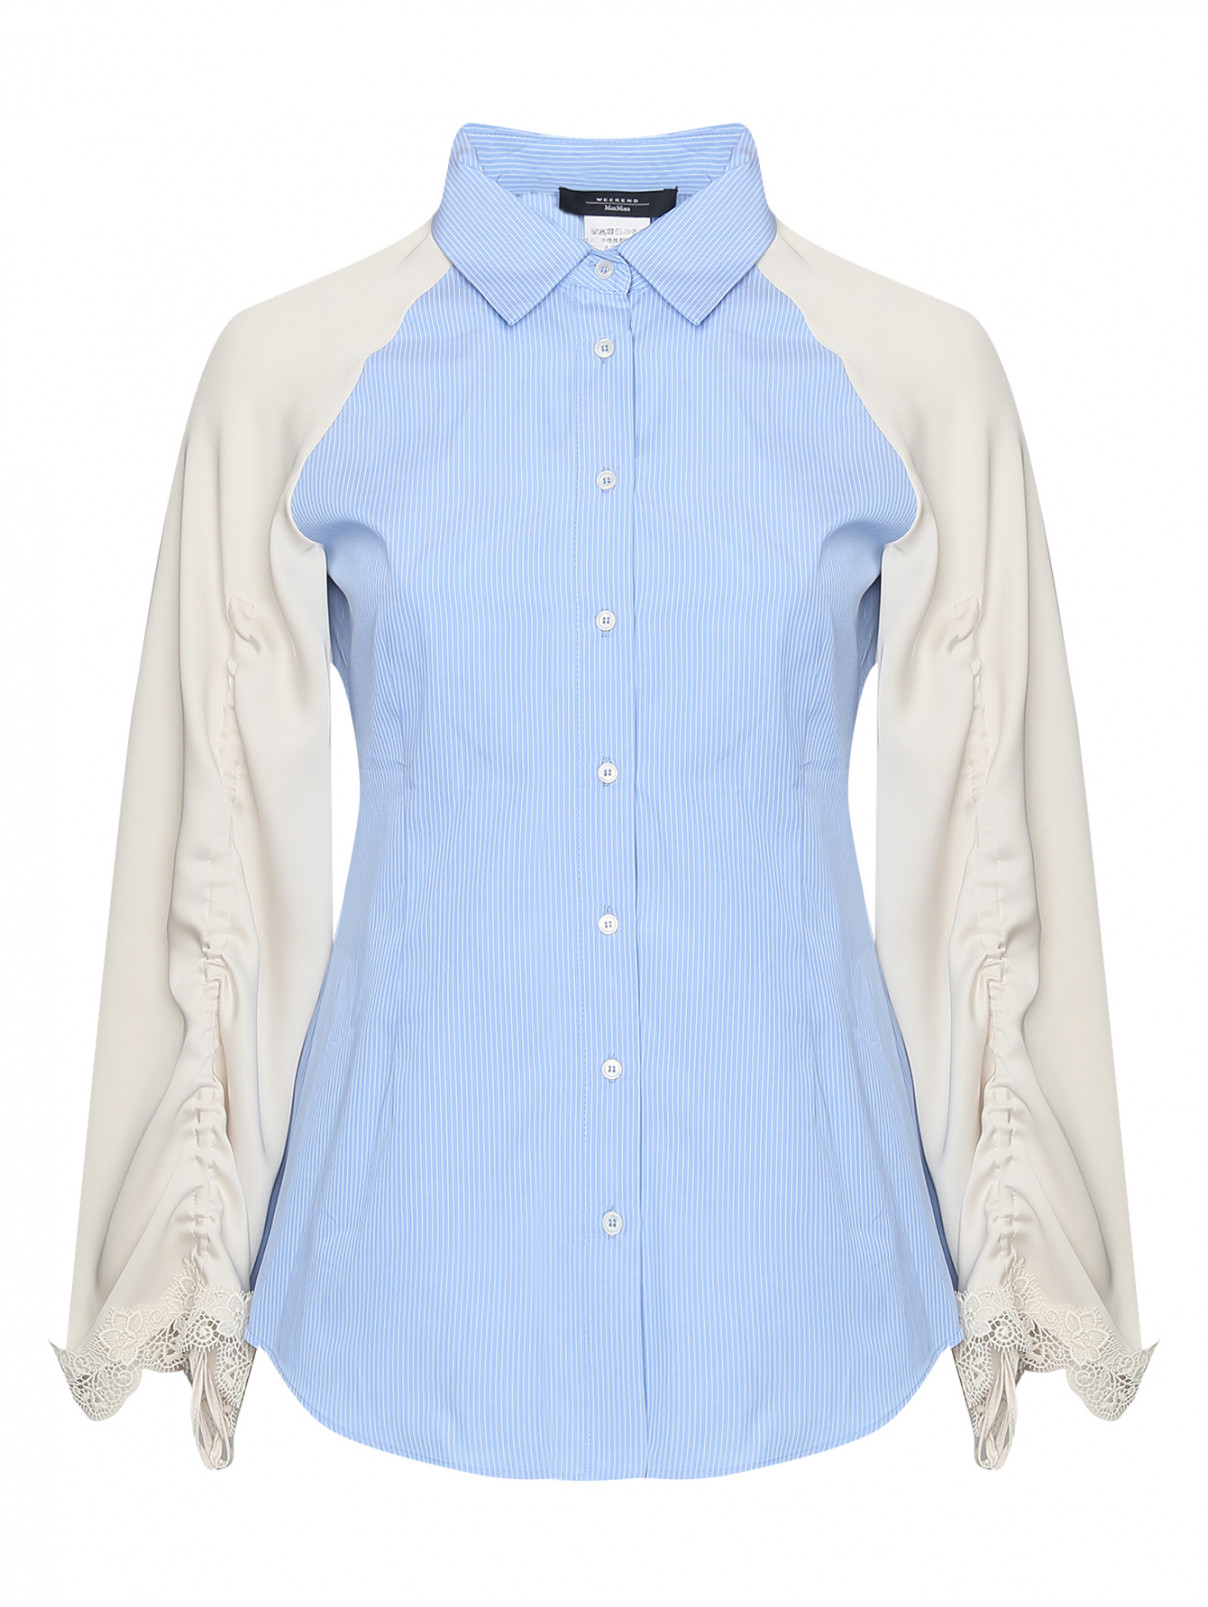 Комбинированная блуза из хлопка с узором полоска Weekend Max Mara  –  Общий вид  – Цвет:  Мультиколор